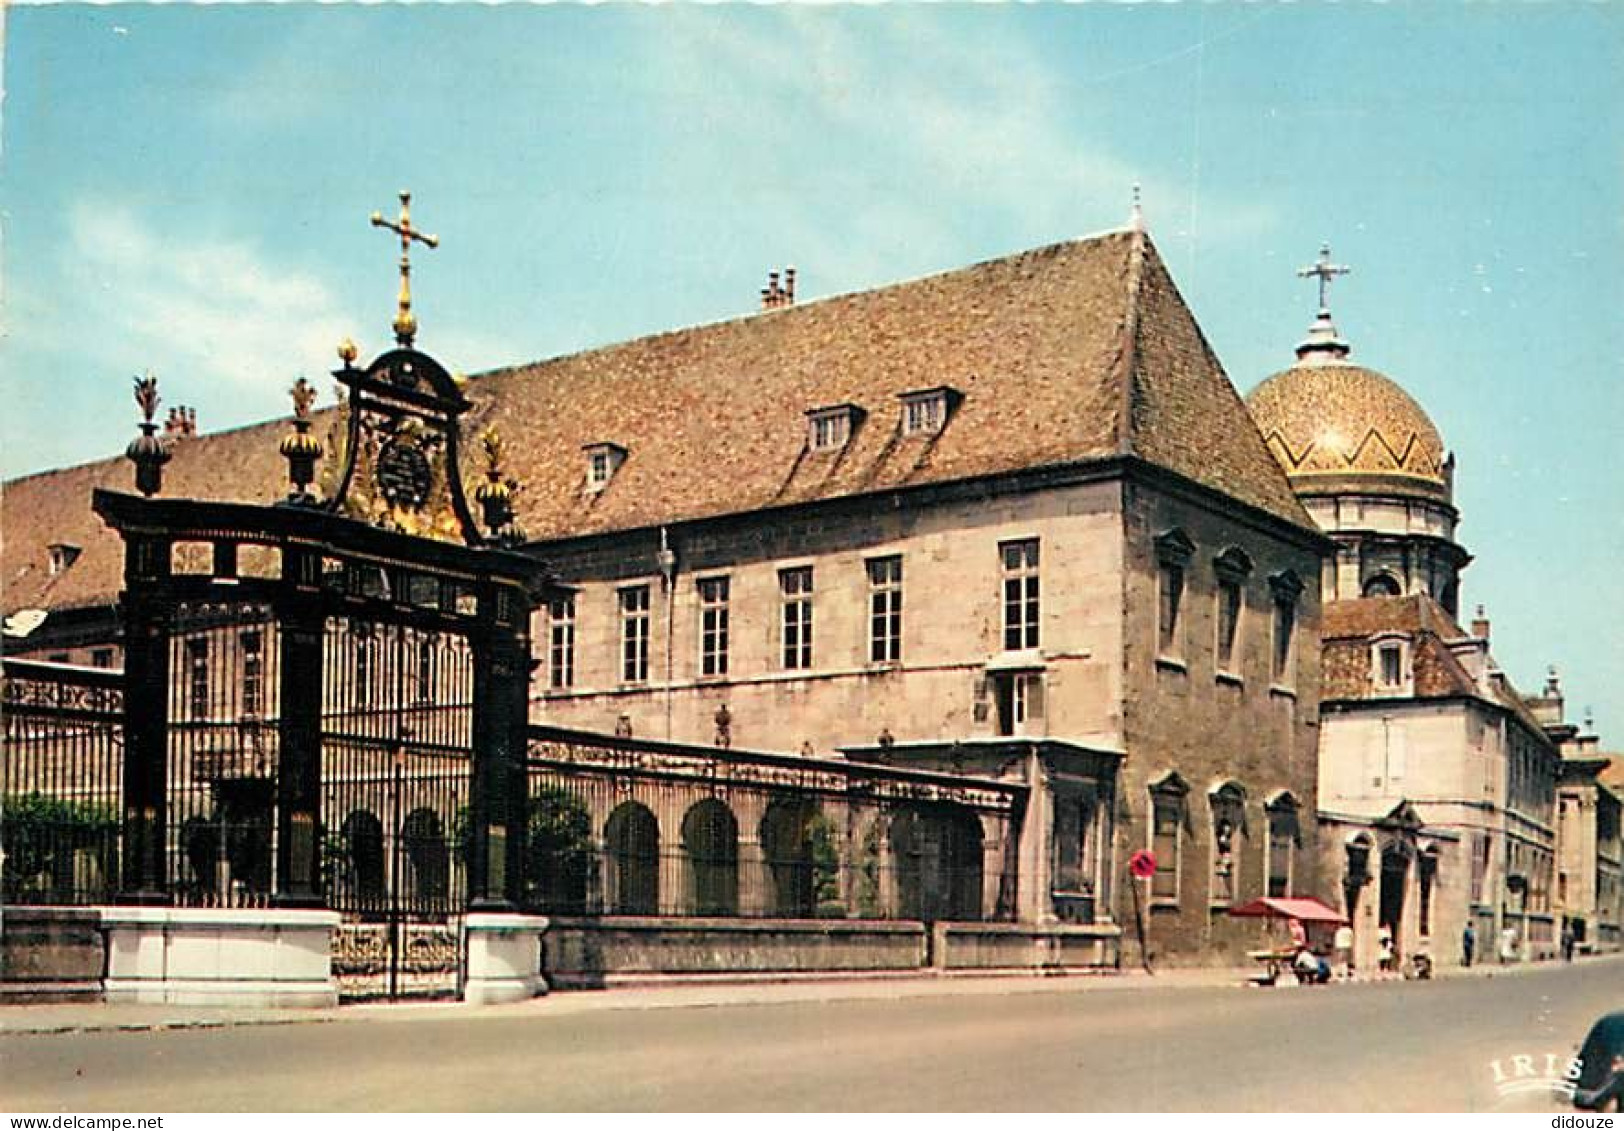 25 - Besançon - L'Hôpital St. Jacques - Grille En Fer Forgé Exécutée En 1703 Par Nicolas Chapuis - CPM - Voir Scans Rect - Besancon